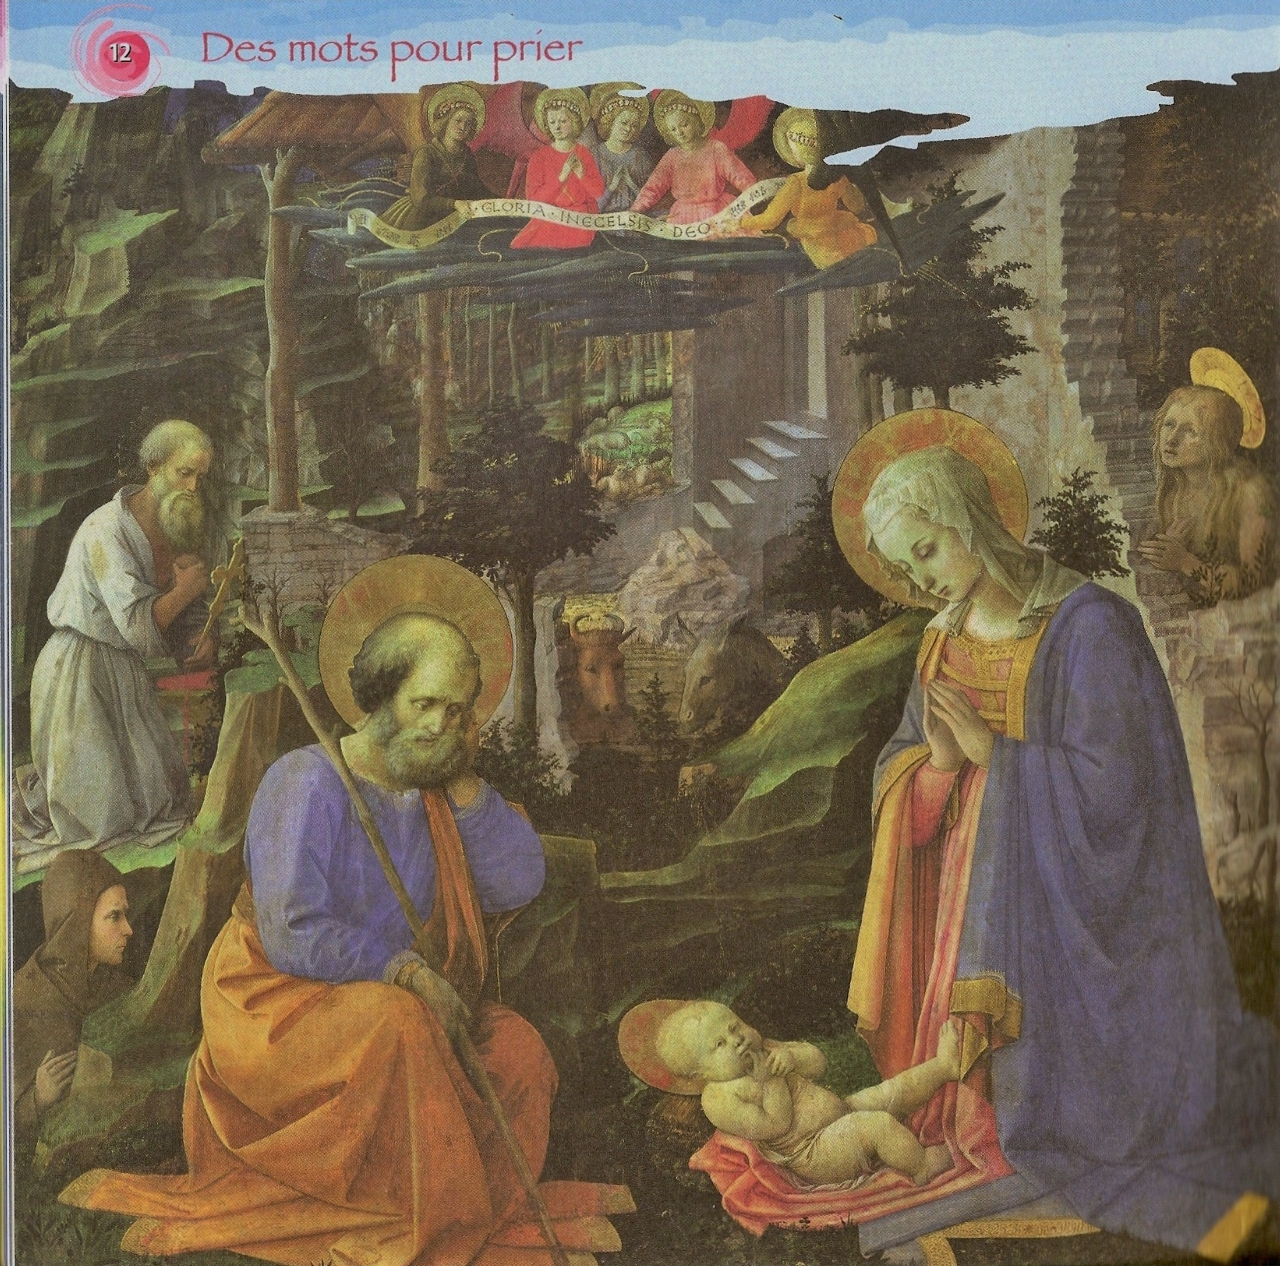 L'adoration de l'enfant - Filippo Lippi - 15e siècle - "Et vous, sauriez-vous faire une lecture de cette œuvre ?"